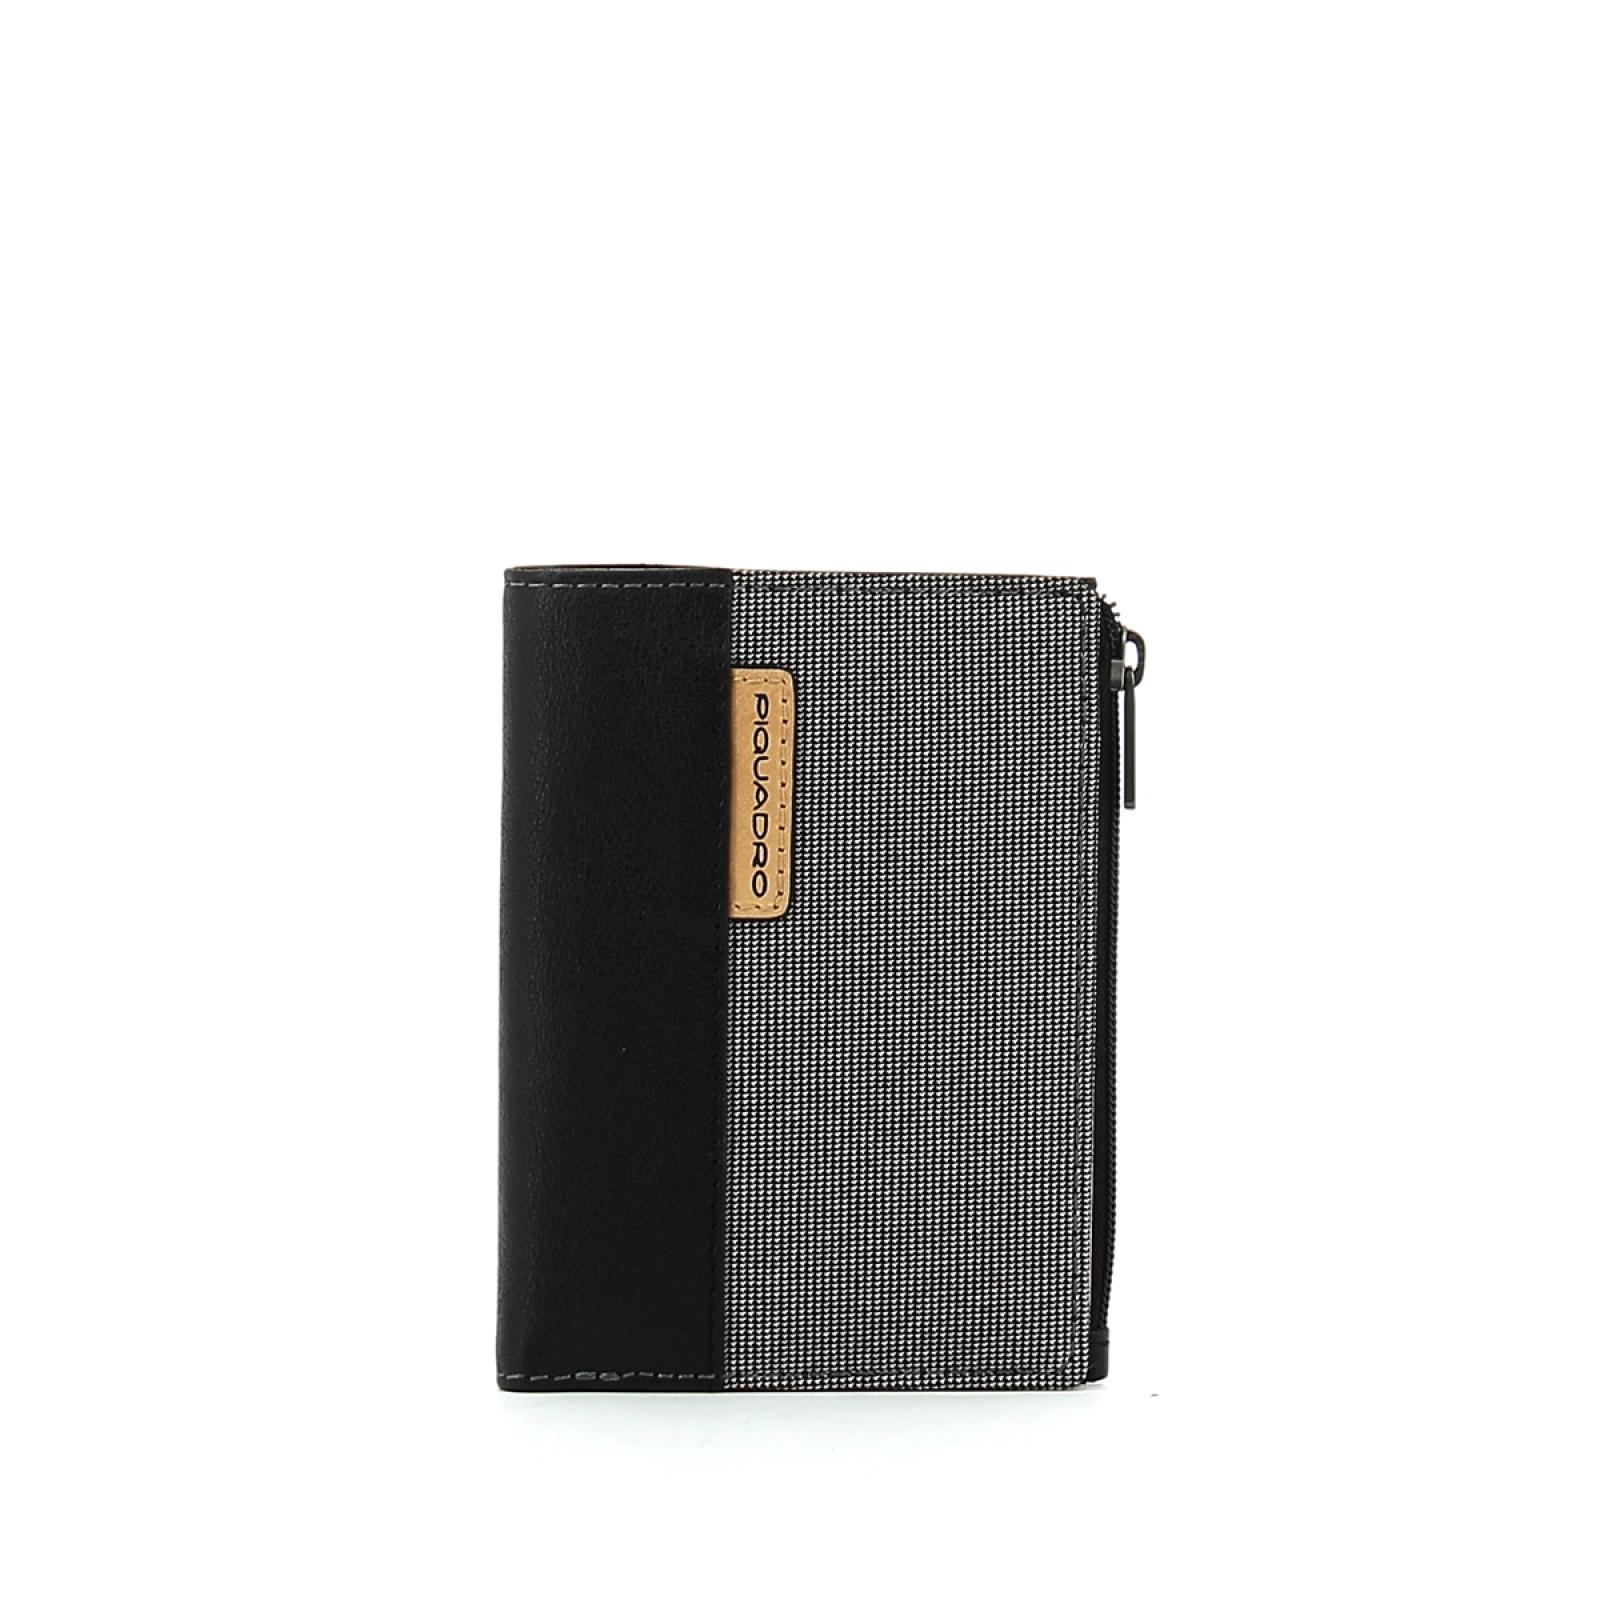 Foldable wallet with ID-GRIGIO-UN